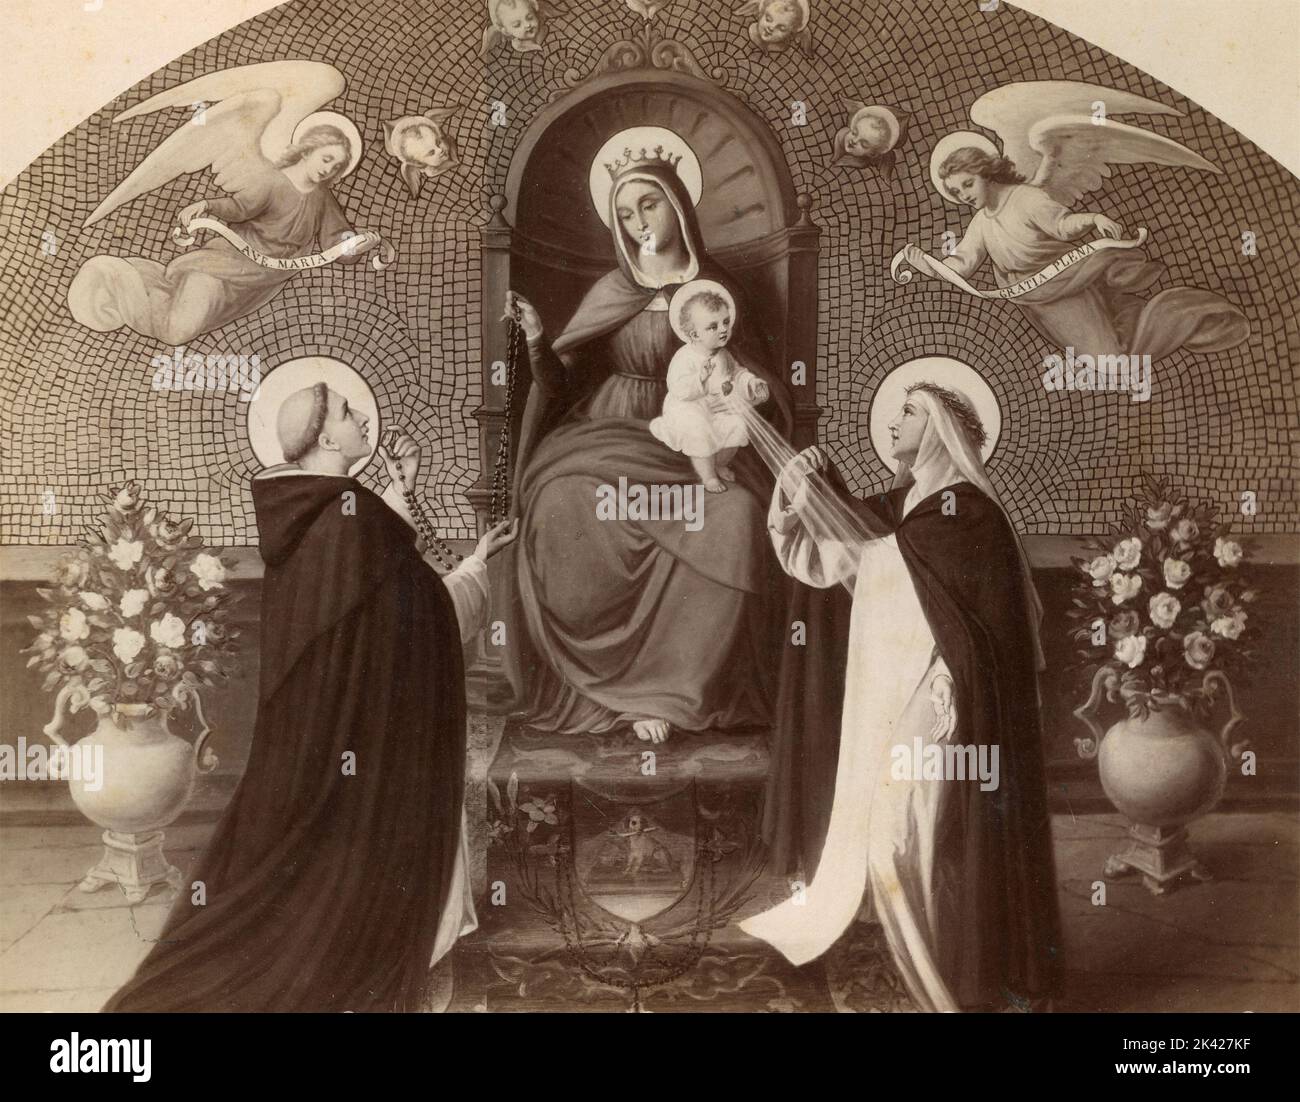 La Vierge Marie enthroned donne à S. Dominic de Guzman un rosaire, peinture de l'artiste italien Silverio Capparoni, 1870s Banque D'Images